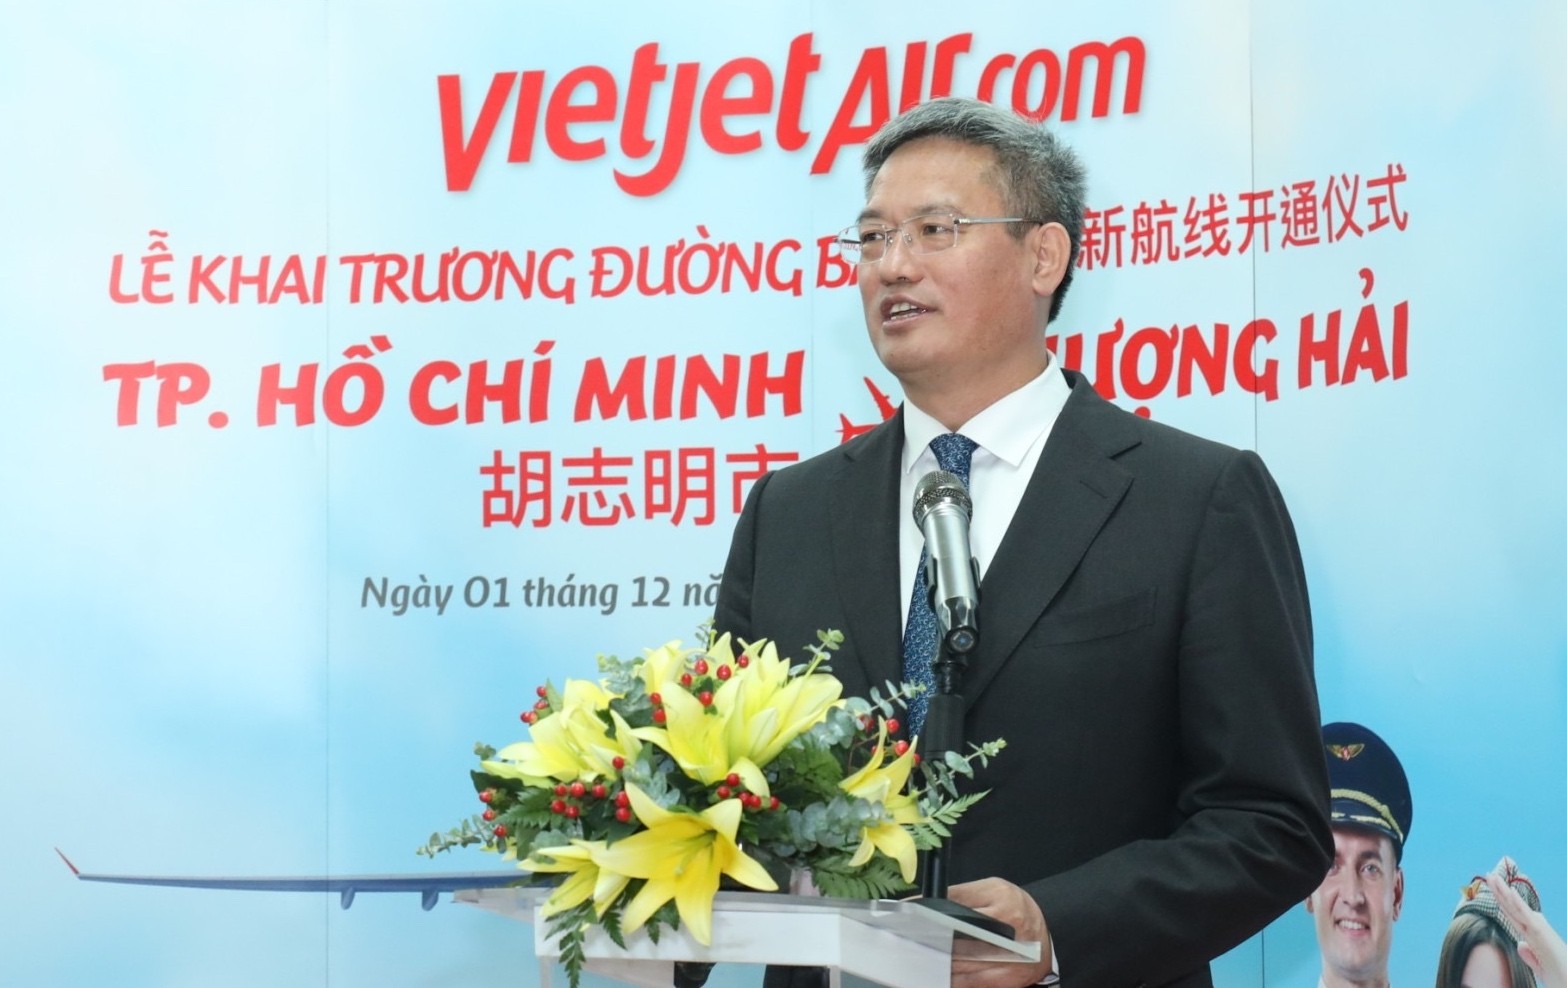 Tin vui: Vietjet vừa khai trương đường bay thẳng giữa Thượng Hải và TP Hồ Chí Minh - ảnh 4